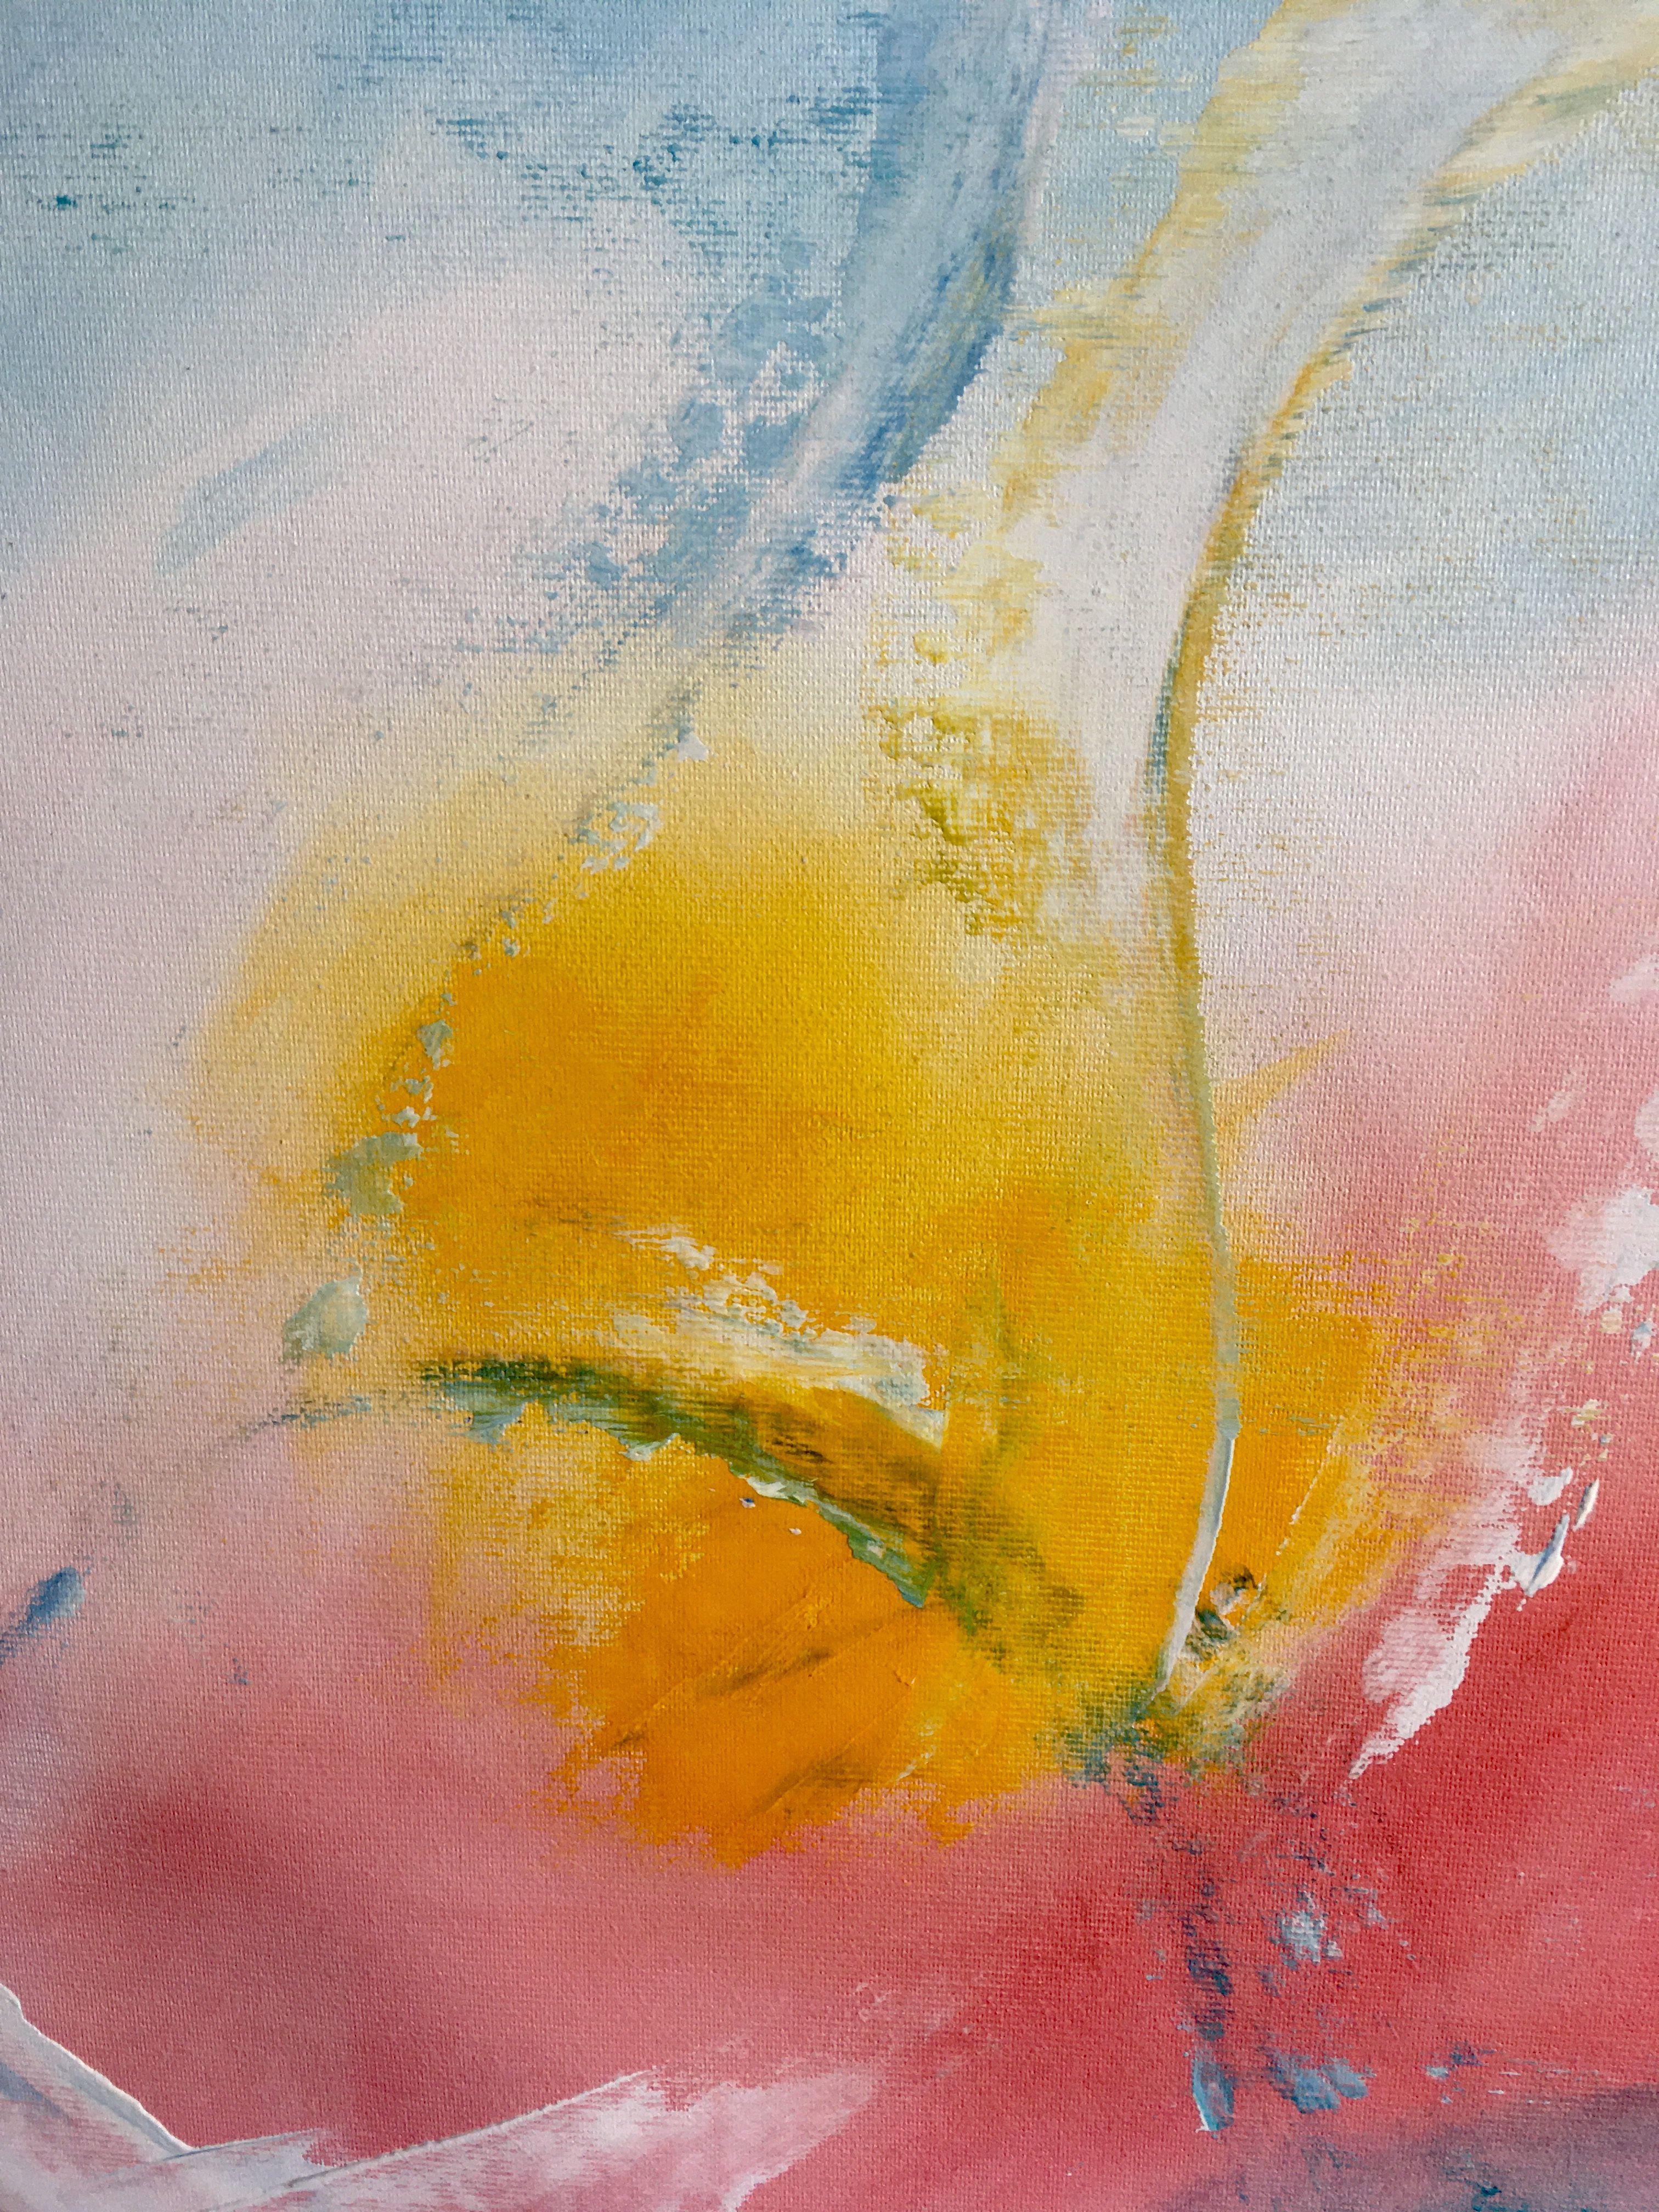 Liebe, Gemälde, Öl auf Leinwand (Expressionismus), Painting, von Eva Hoffmann